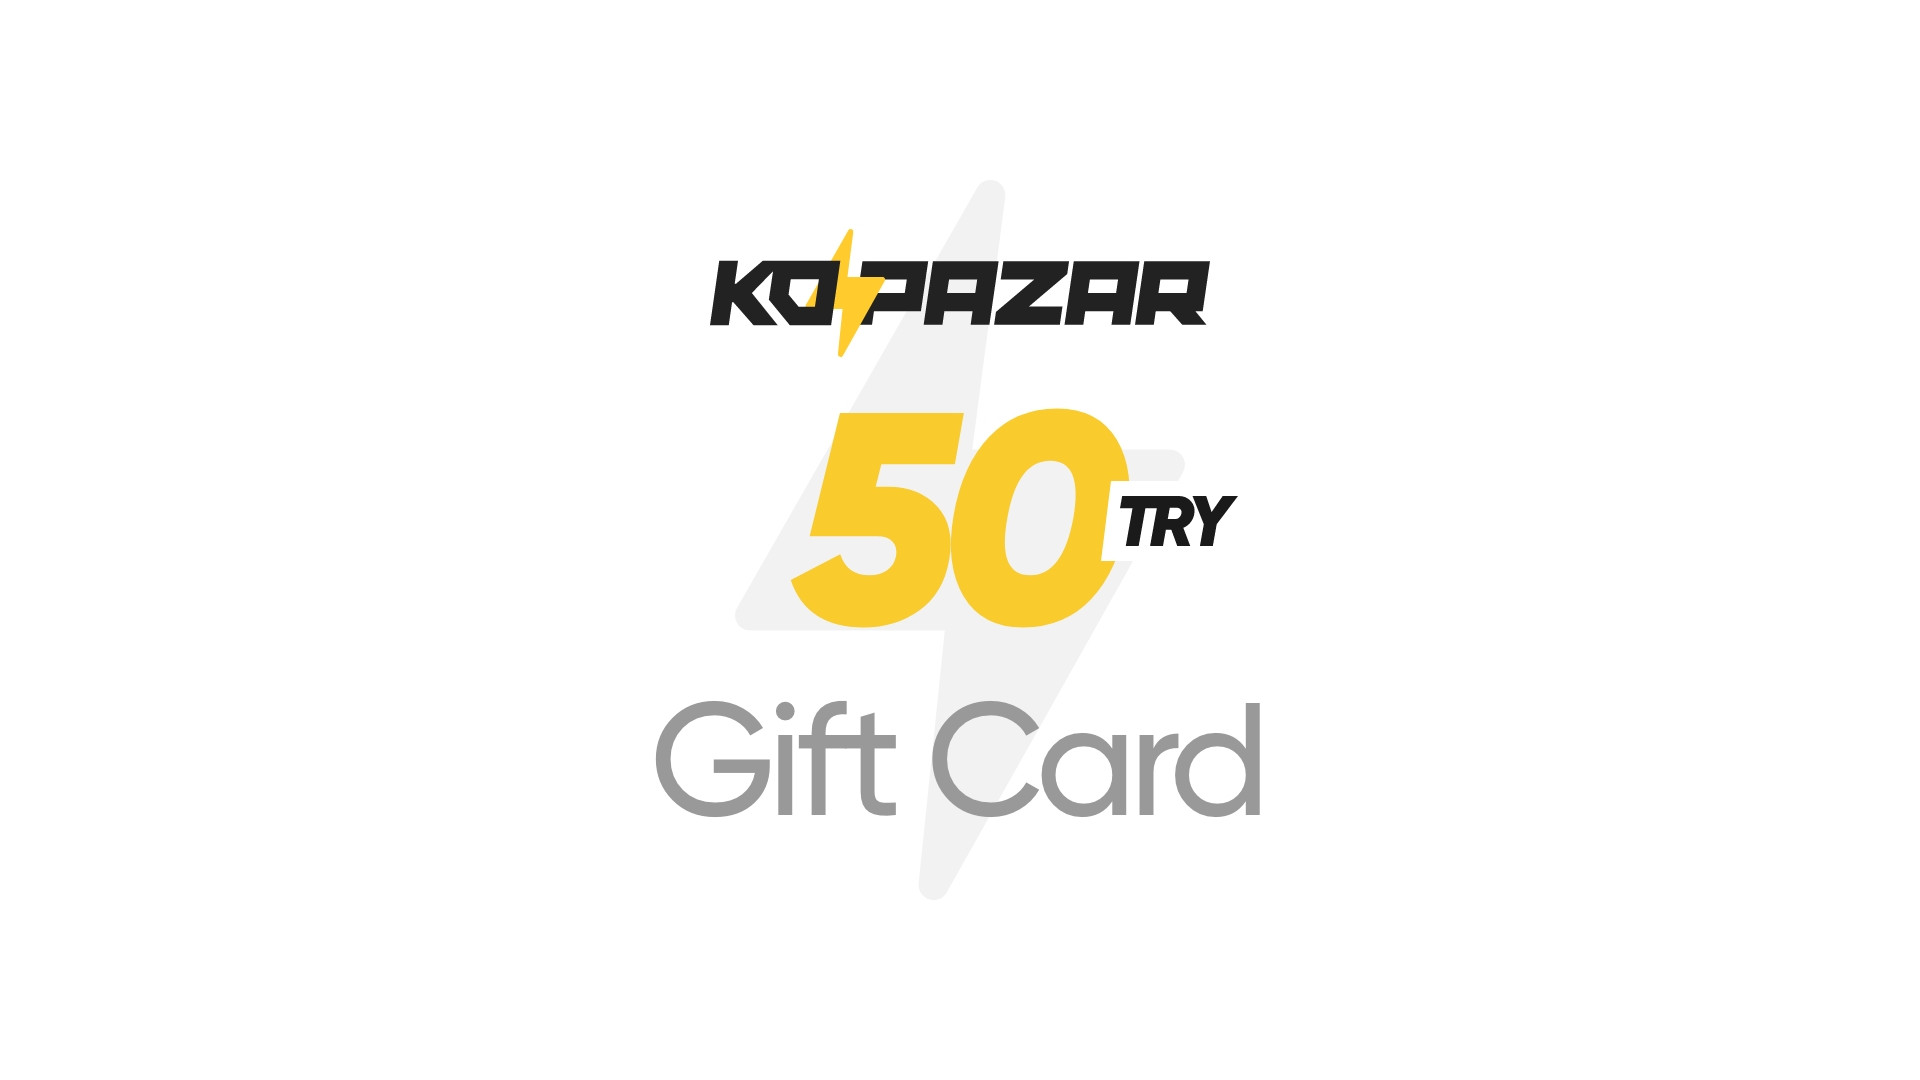 Kopazar 50 TRY Gift Card (2.09$)